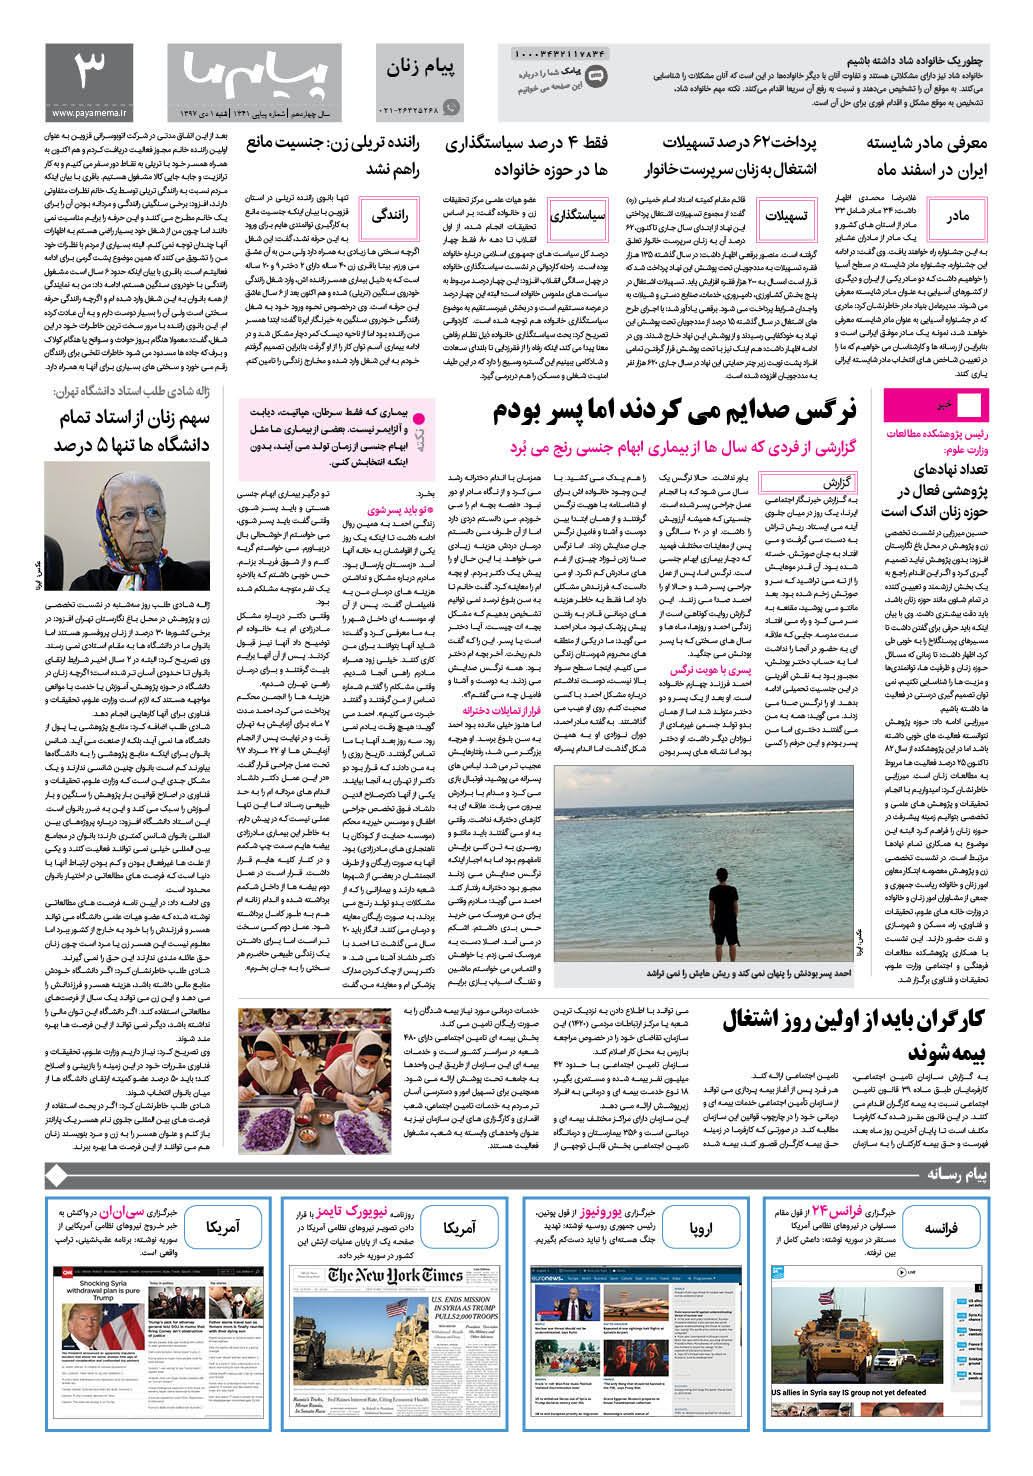 صفحه پیام زنان شماره 1341 روزنامه پیام ما